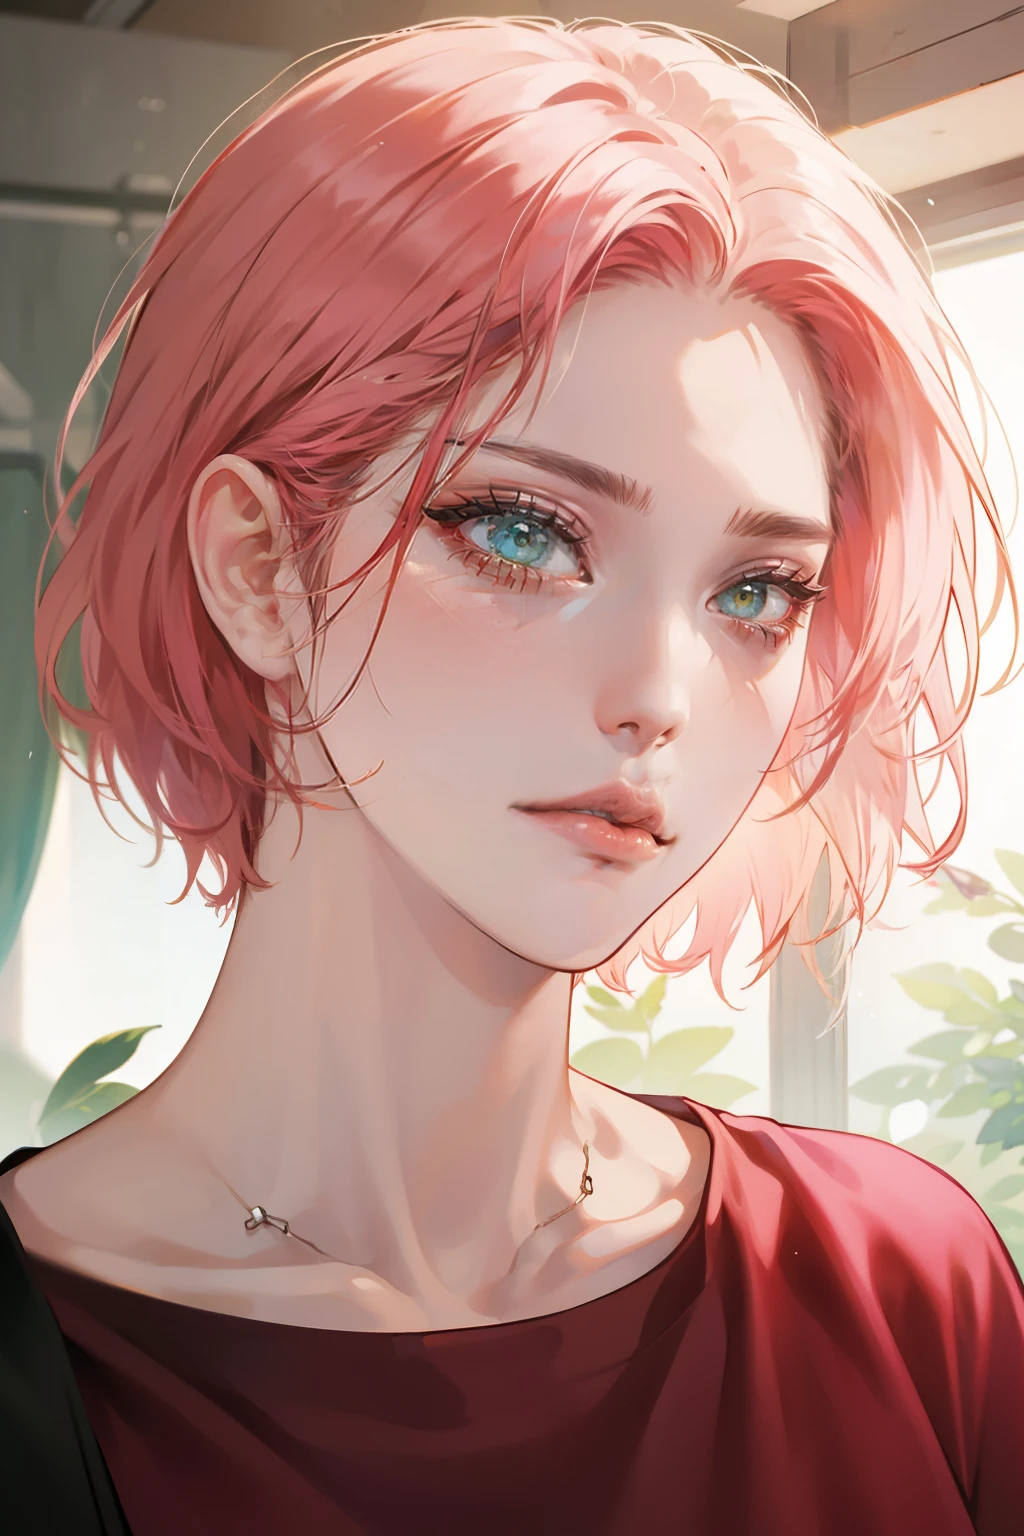 소녀, 분홍색 머리, 녹색 눈, 날카로운 특징, 하얀 피부, 핑크색 입술, 빨간 셔츠